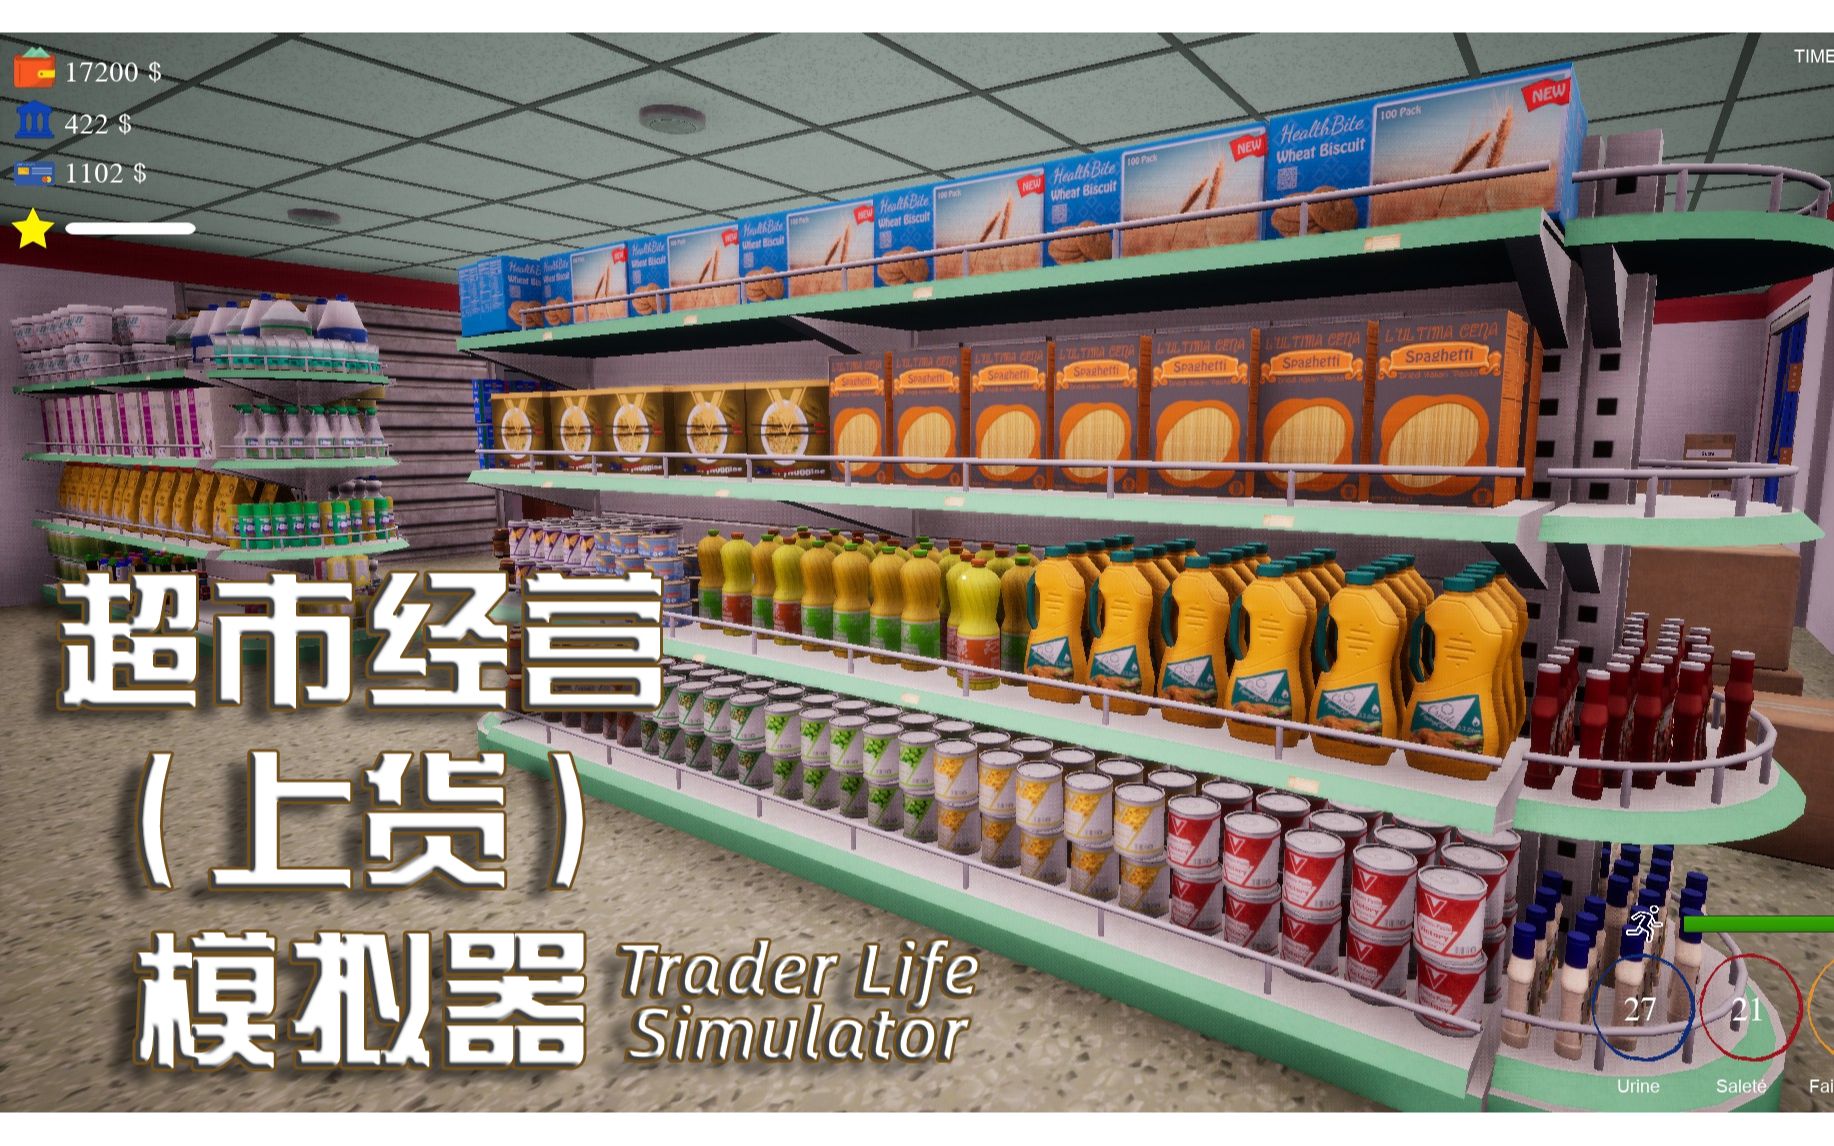 【试玩】专治一切强迫症 超市上货模拟器 Trader Life Simulator